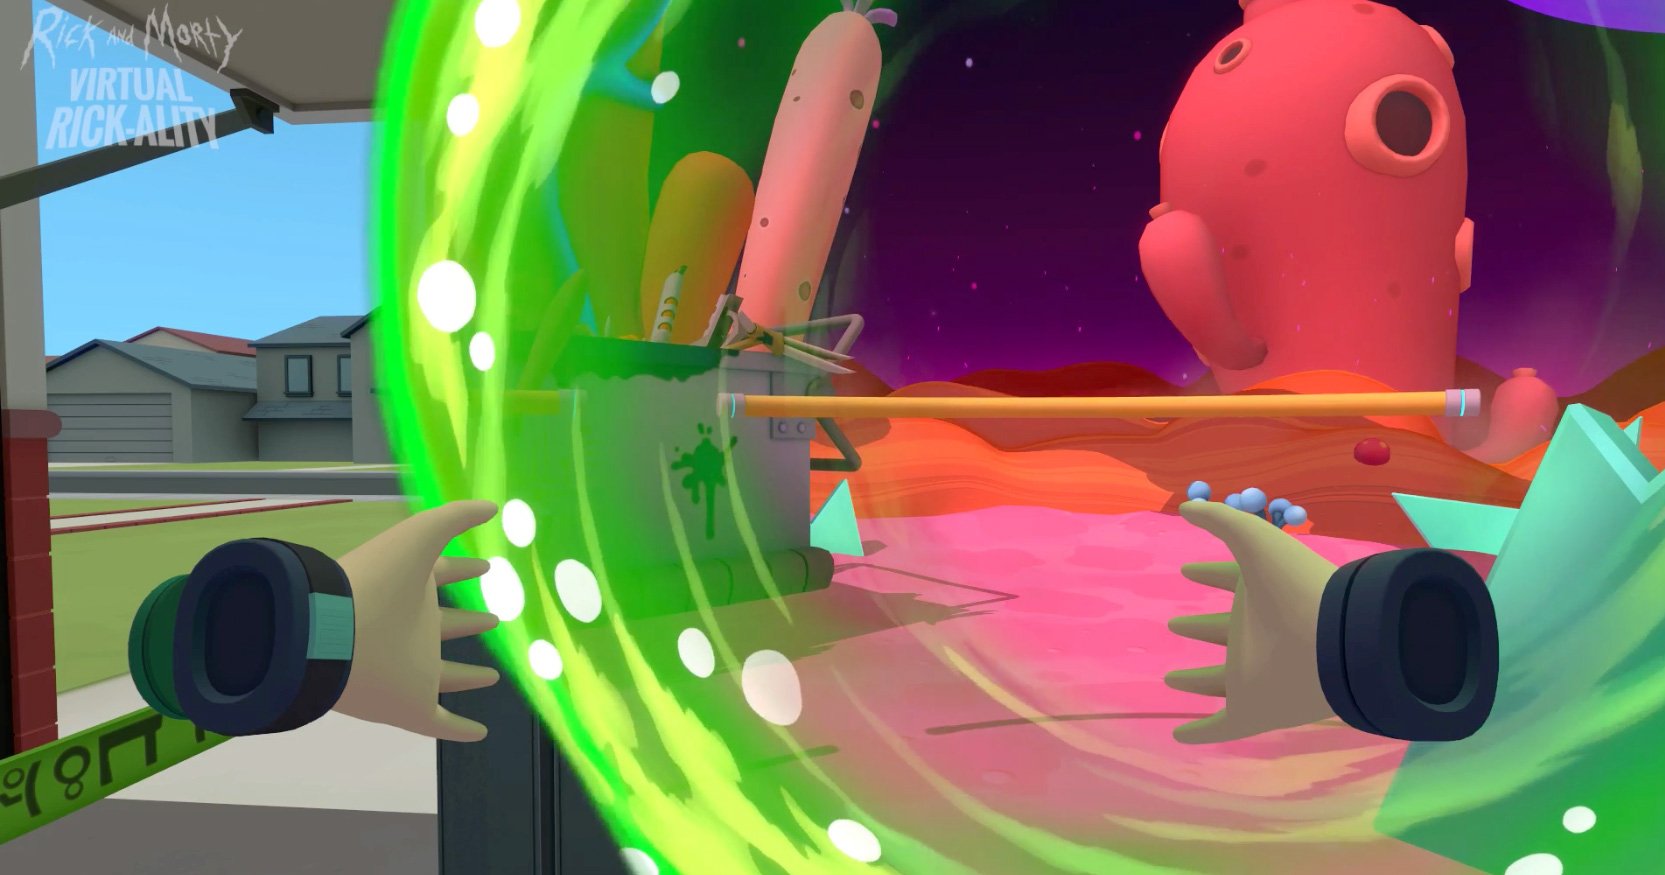 『Rick and Morty VR』のポータルのレンダリング